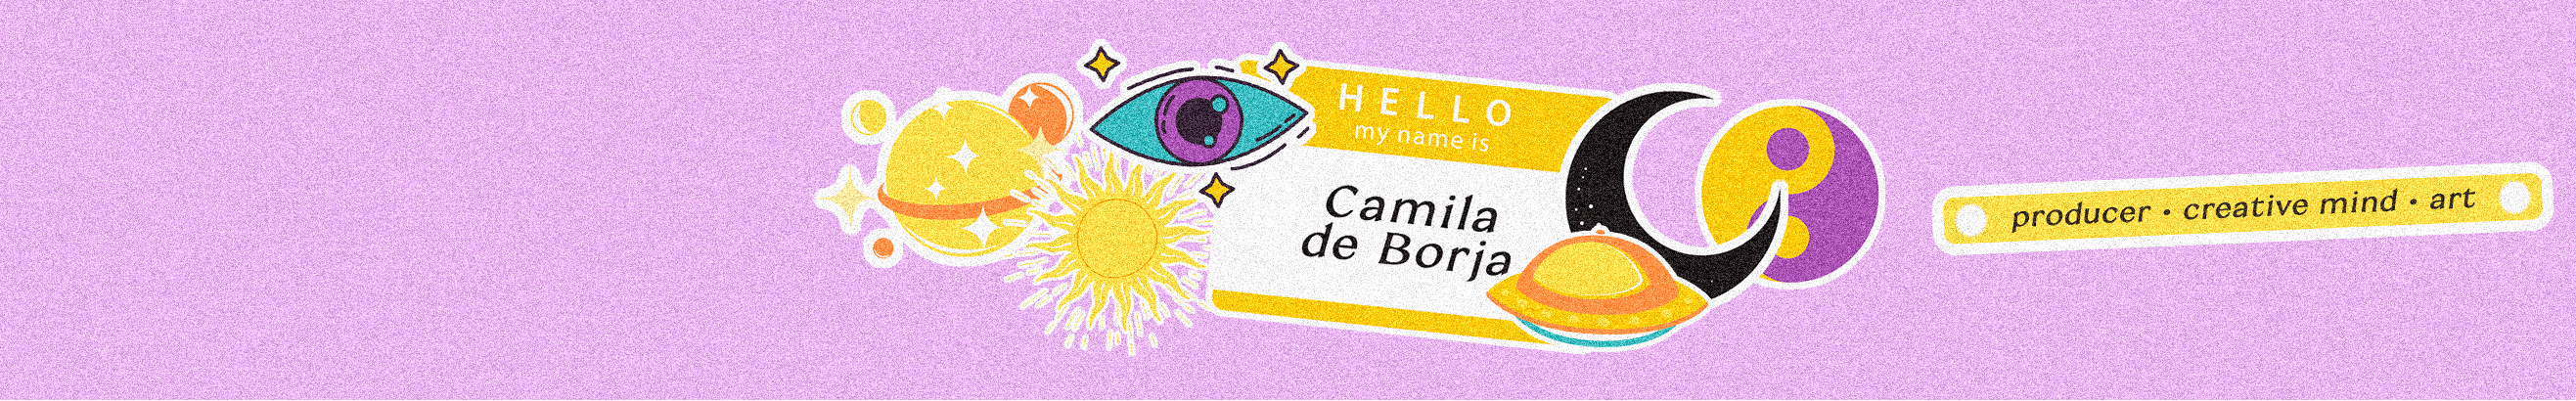 Camila de Borja's profile banner